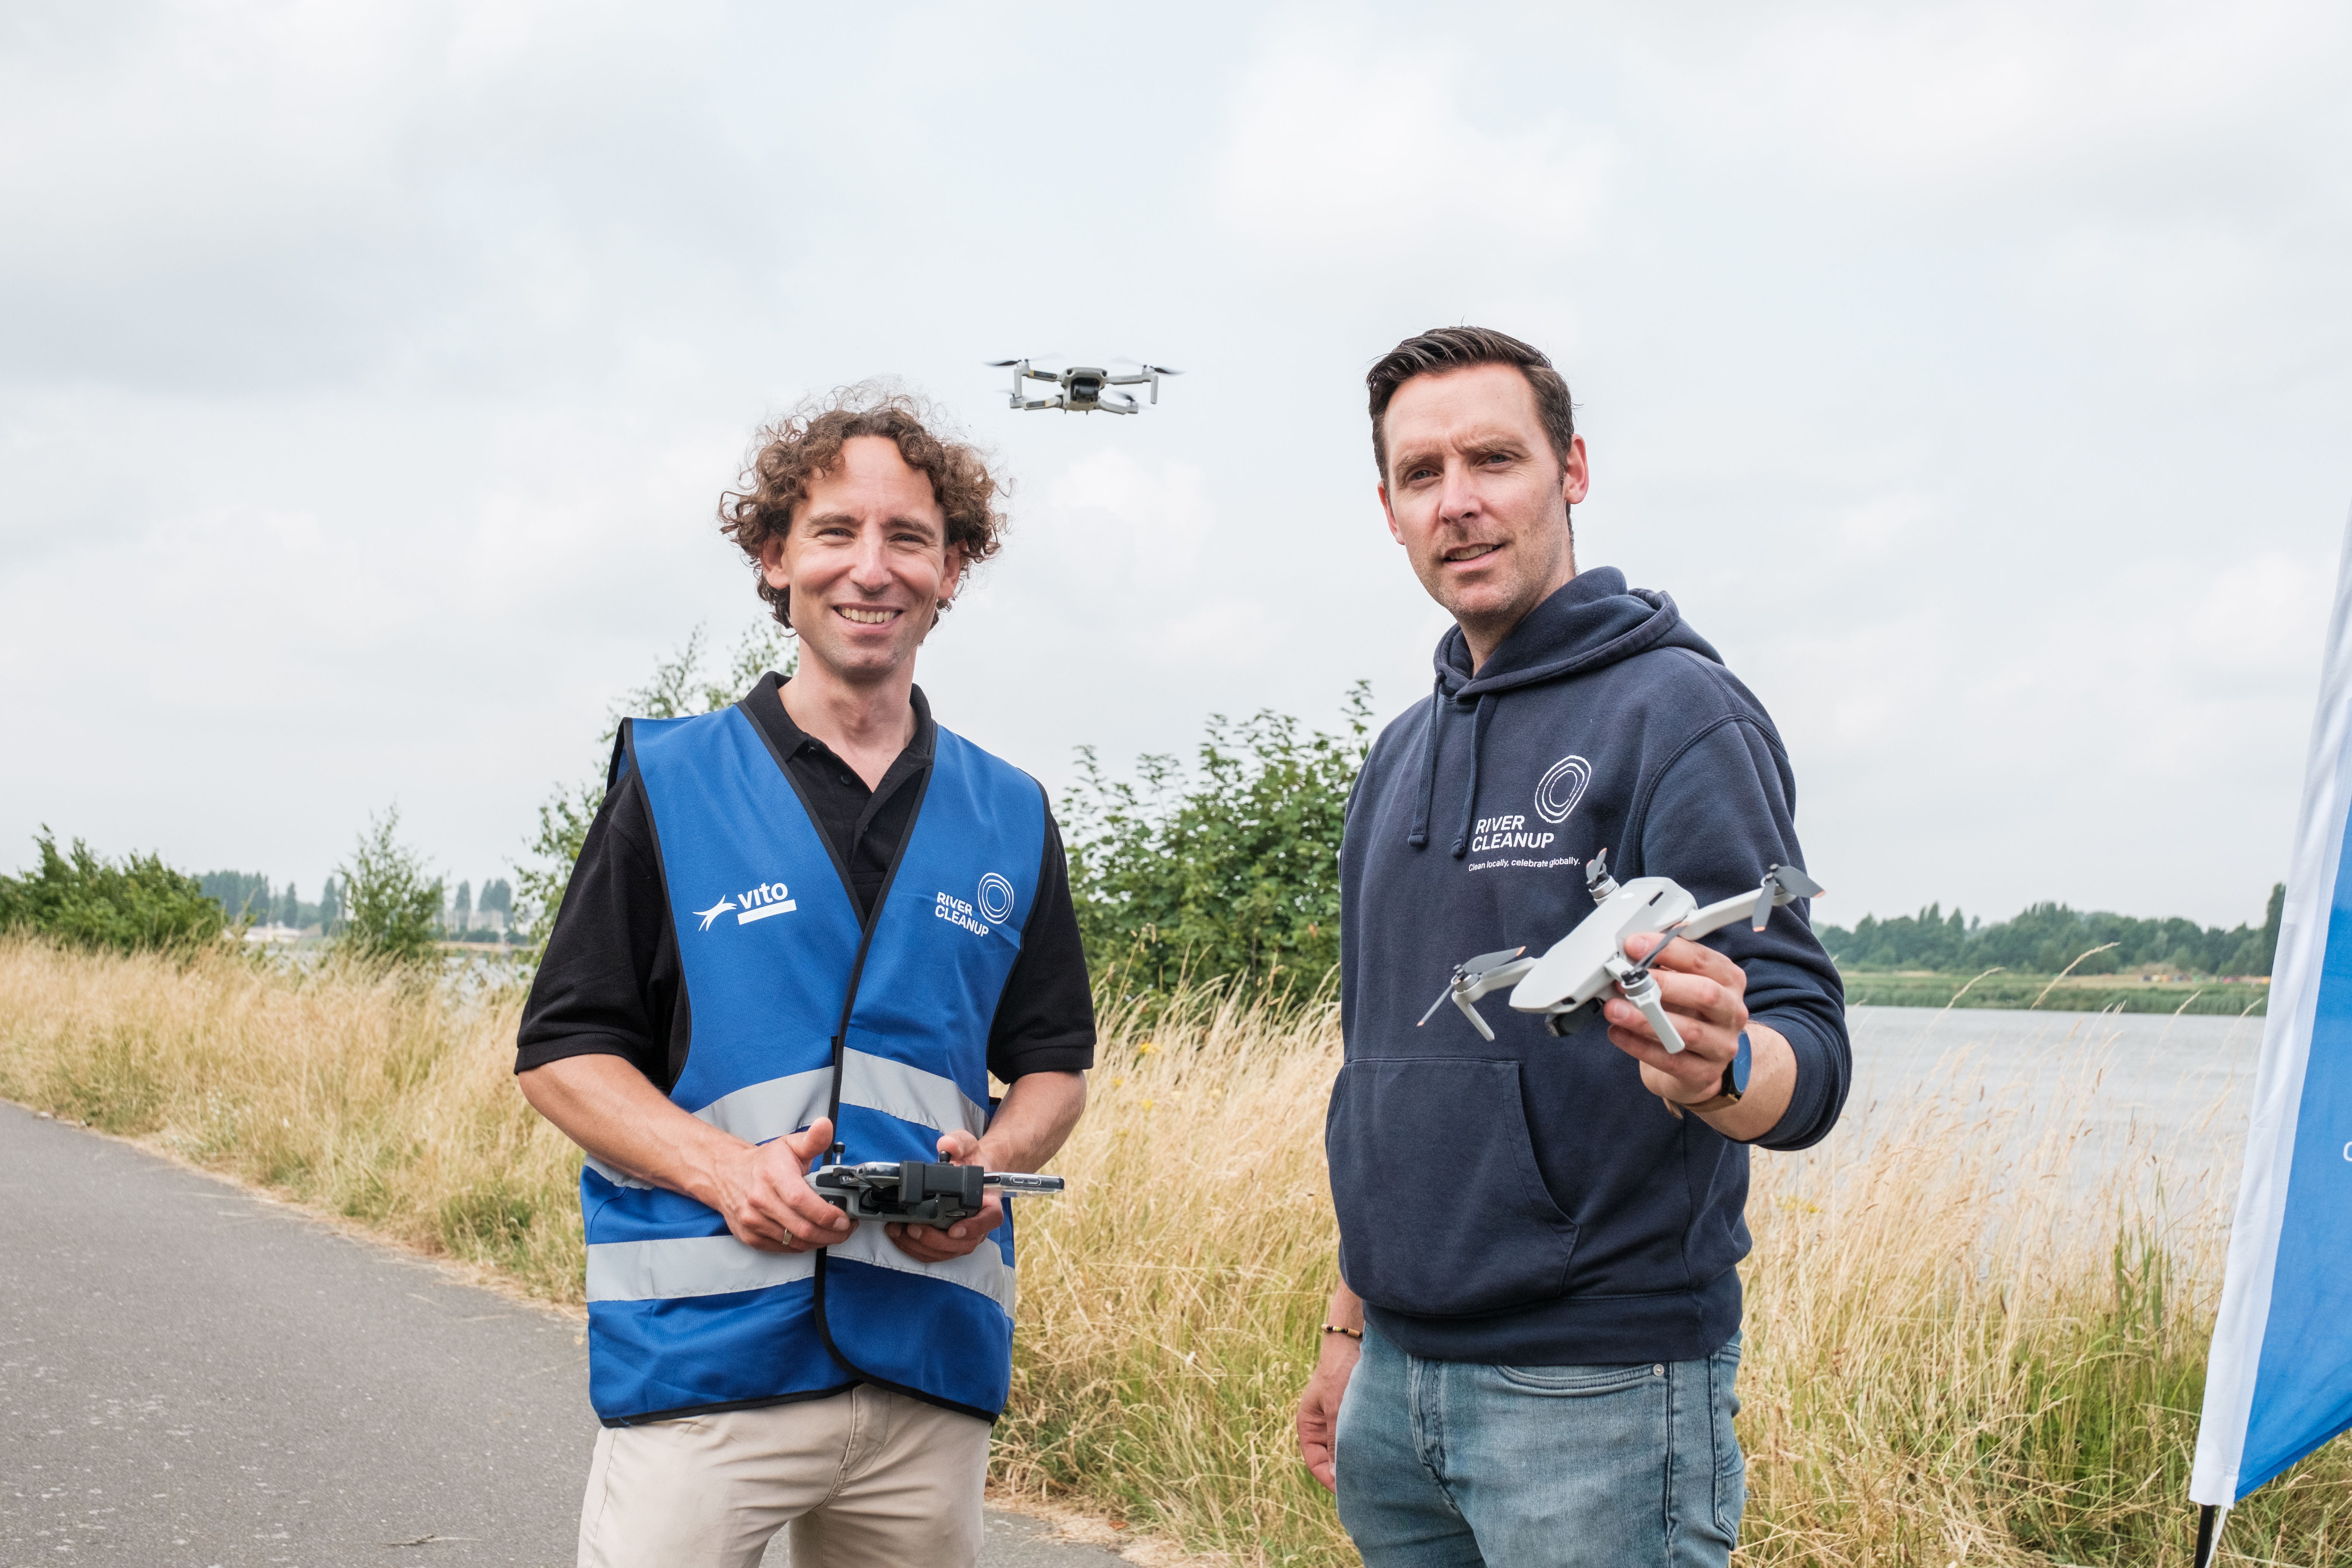 Klaas Pauly - chercheur drones et chef du projet 'Waste Watchers' chez VITO et Thomas de Groote - fondateur et PDG de River Cleanup